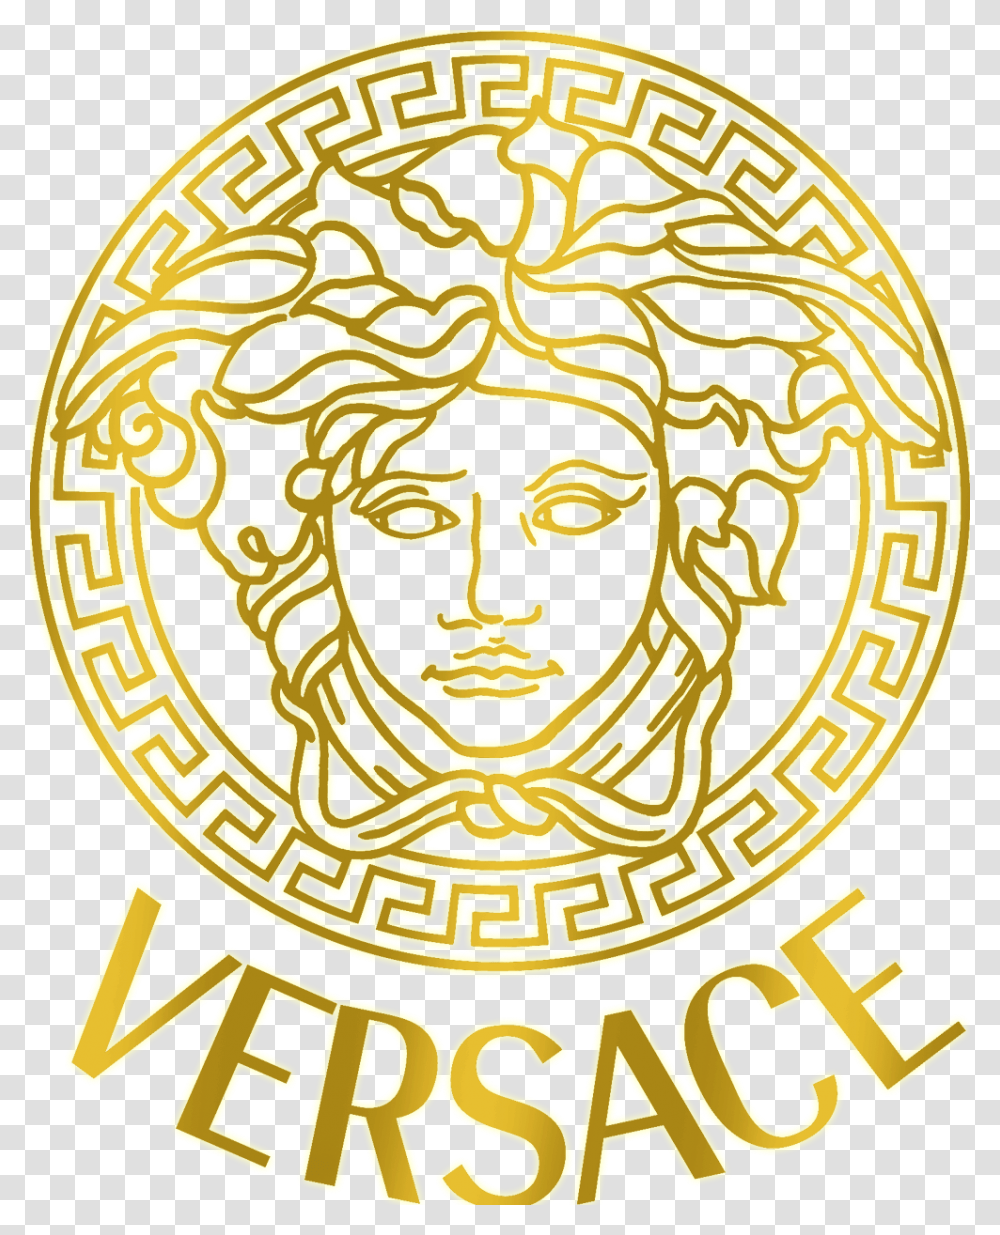 Логотип Версаче 1990